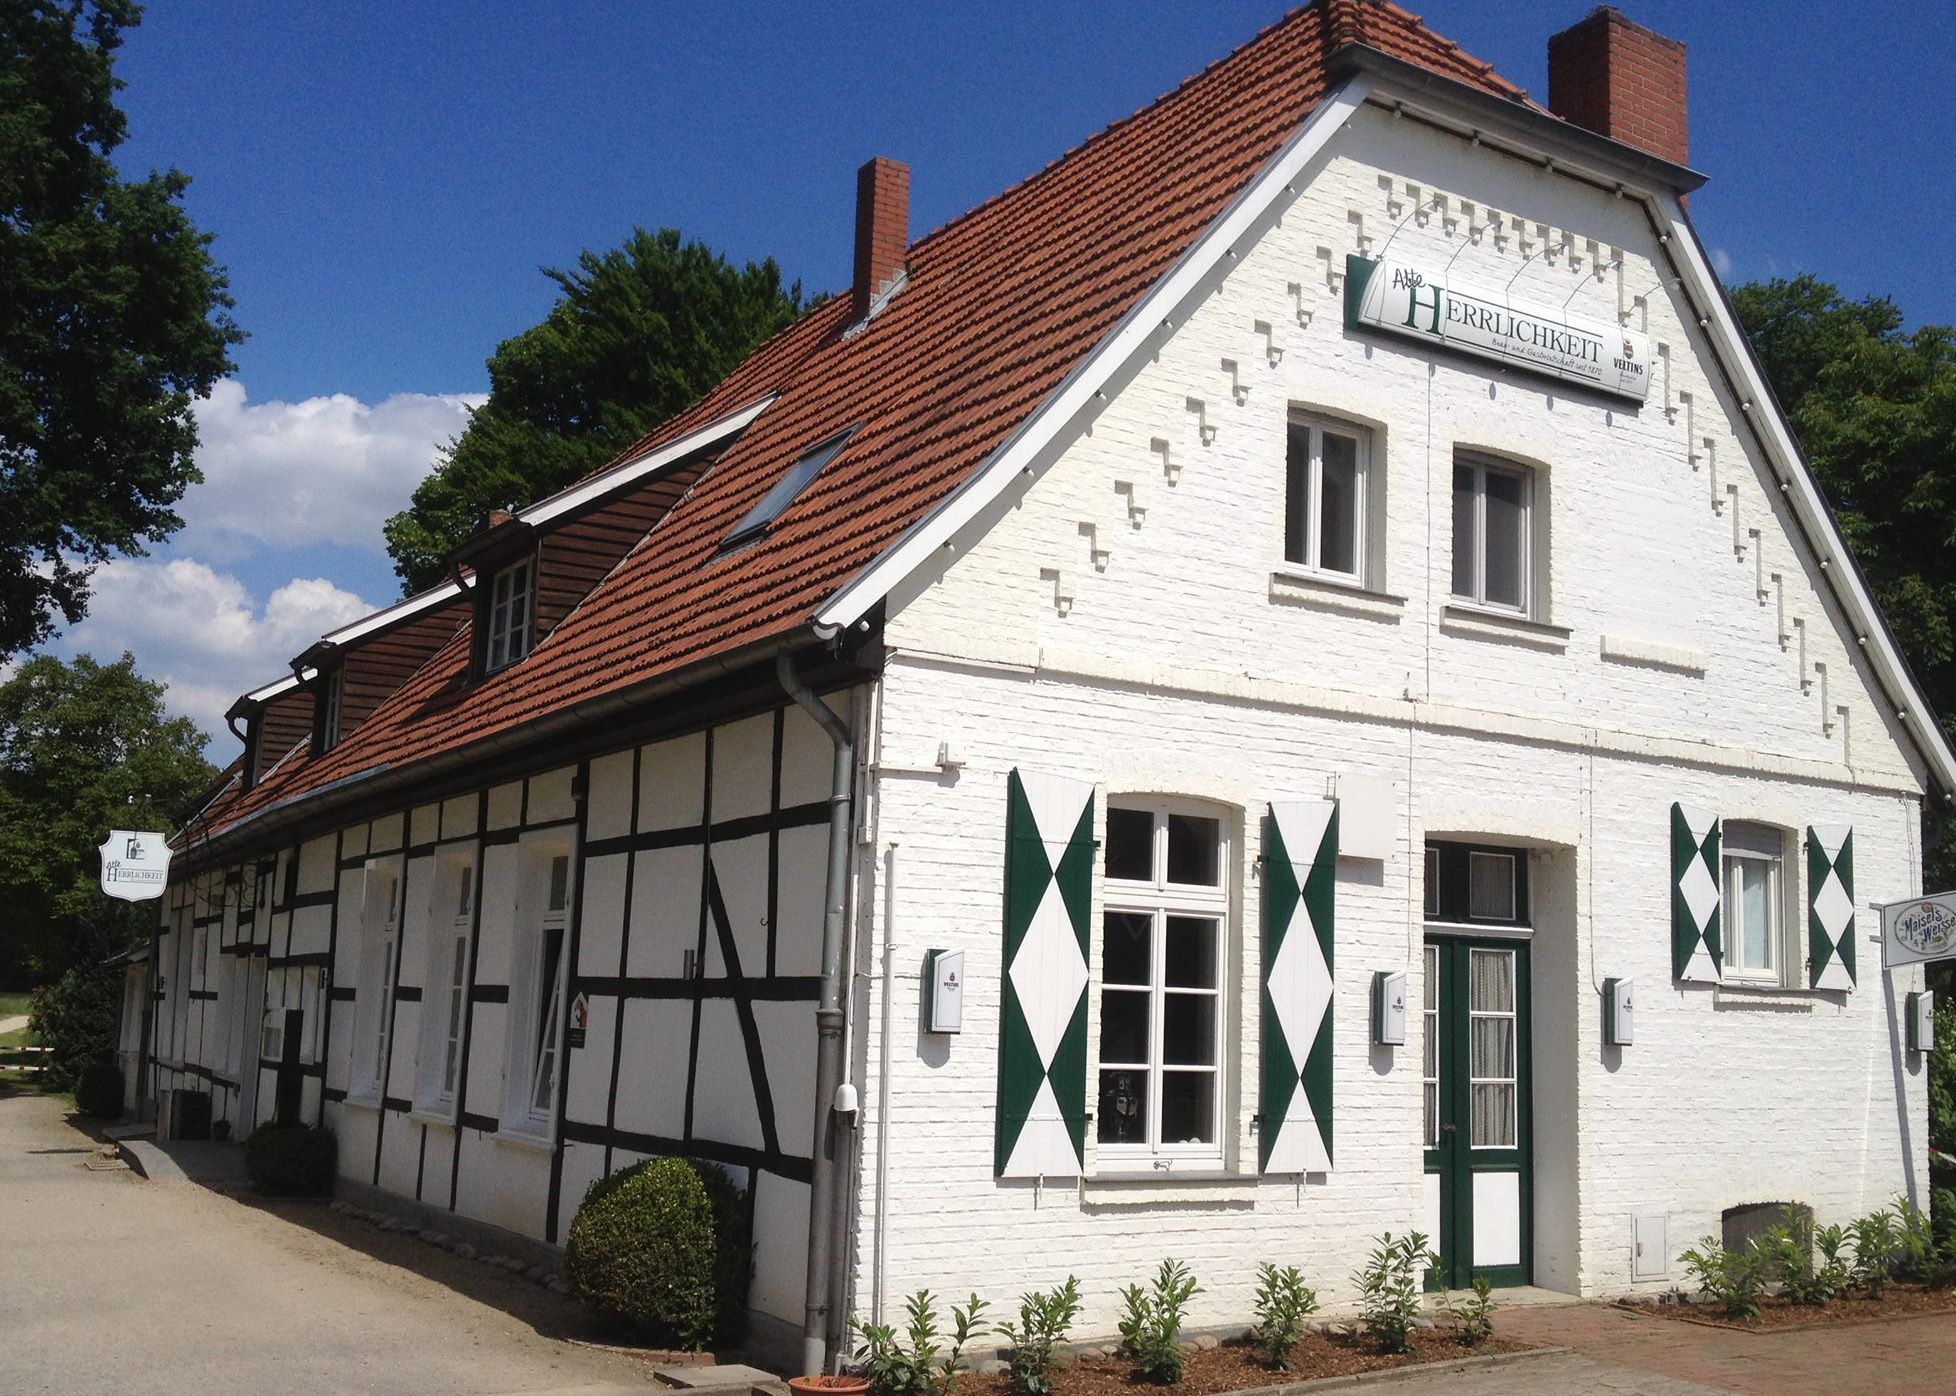 Bild 1 Alte Herrlichkeit, Gaststätte Restaurant in Warendorf